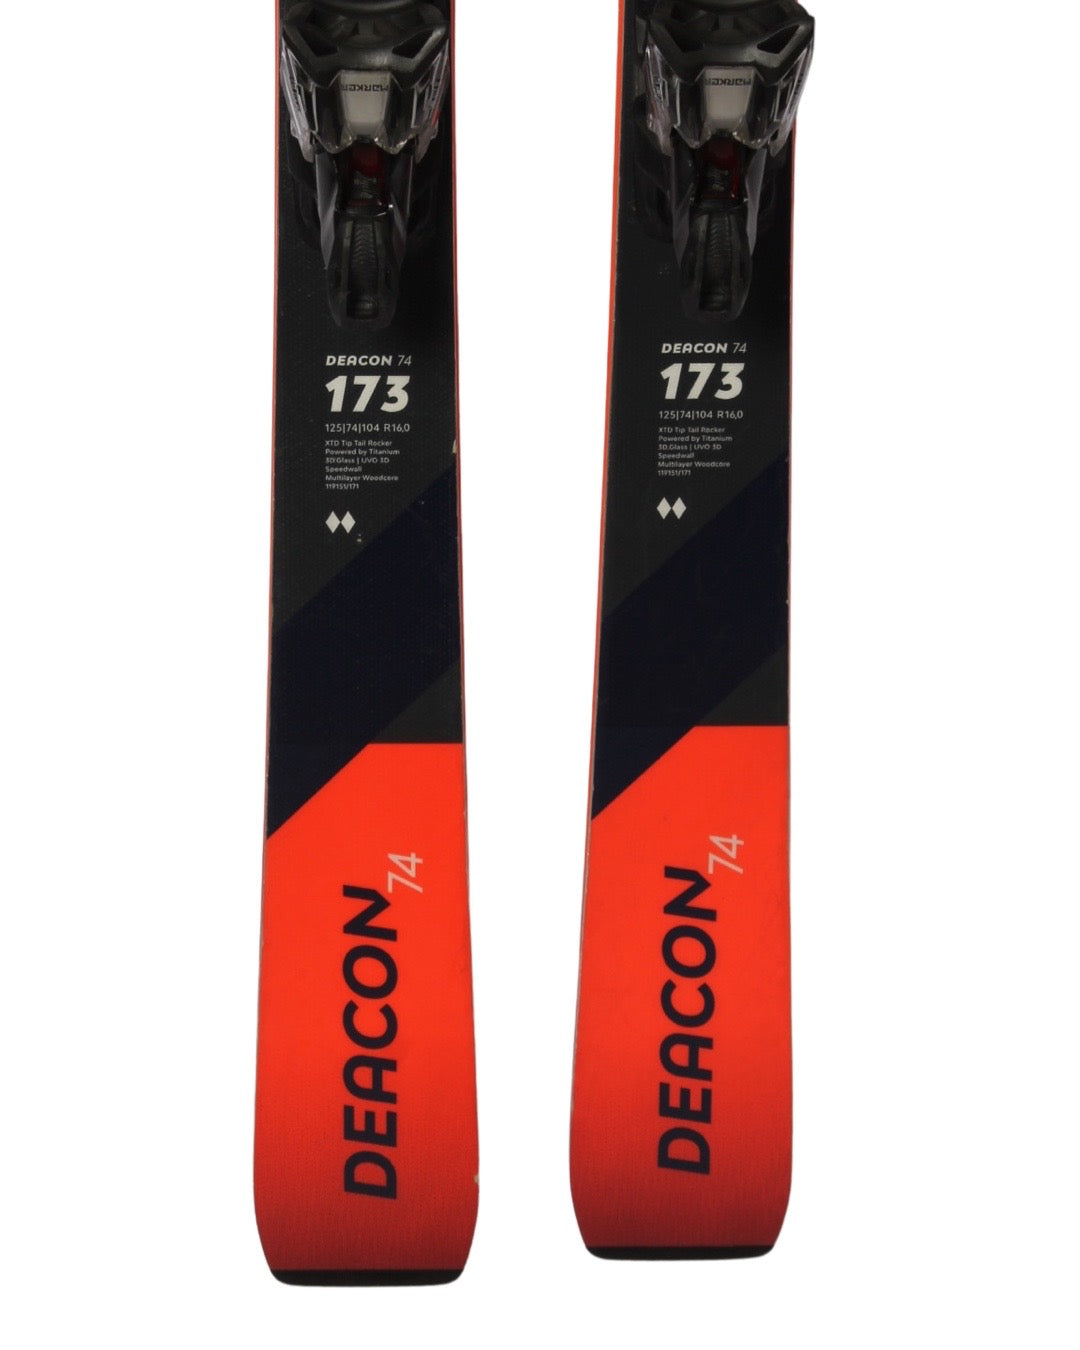 Ski - Völkl Deacon 74 2020 - 2799 kr